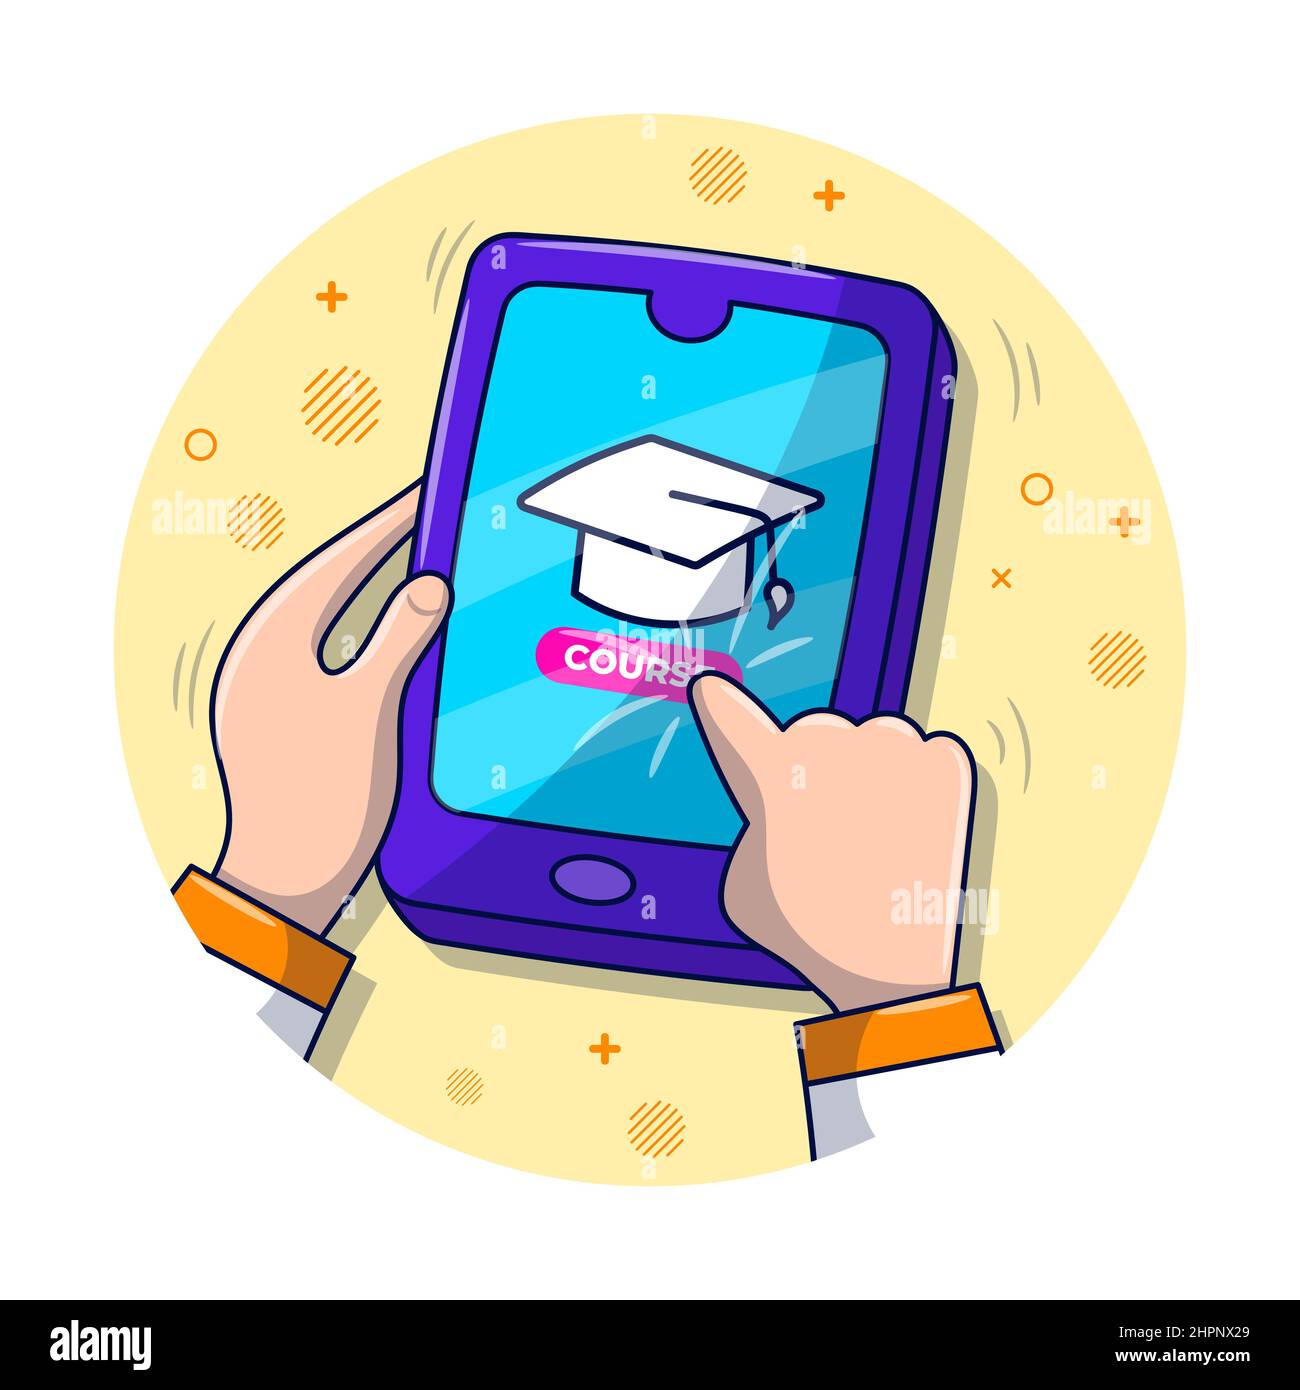 Online-Lernen mit Smartphone, pädagogische handgezeichnete Cartoon-Illustration Stock Vektor